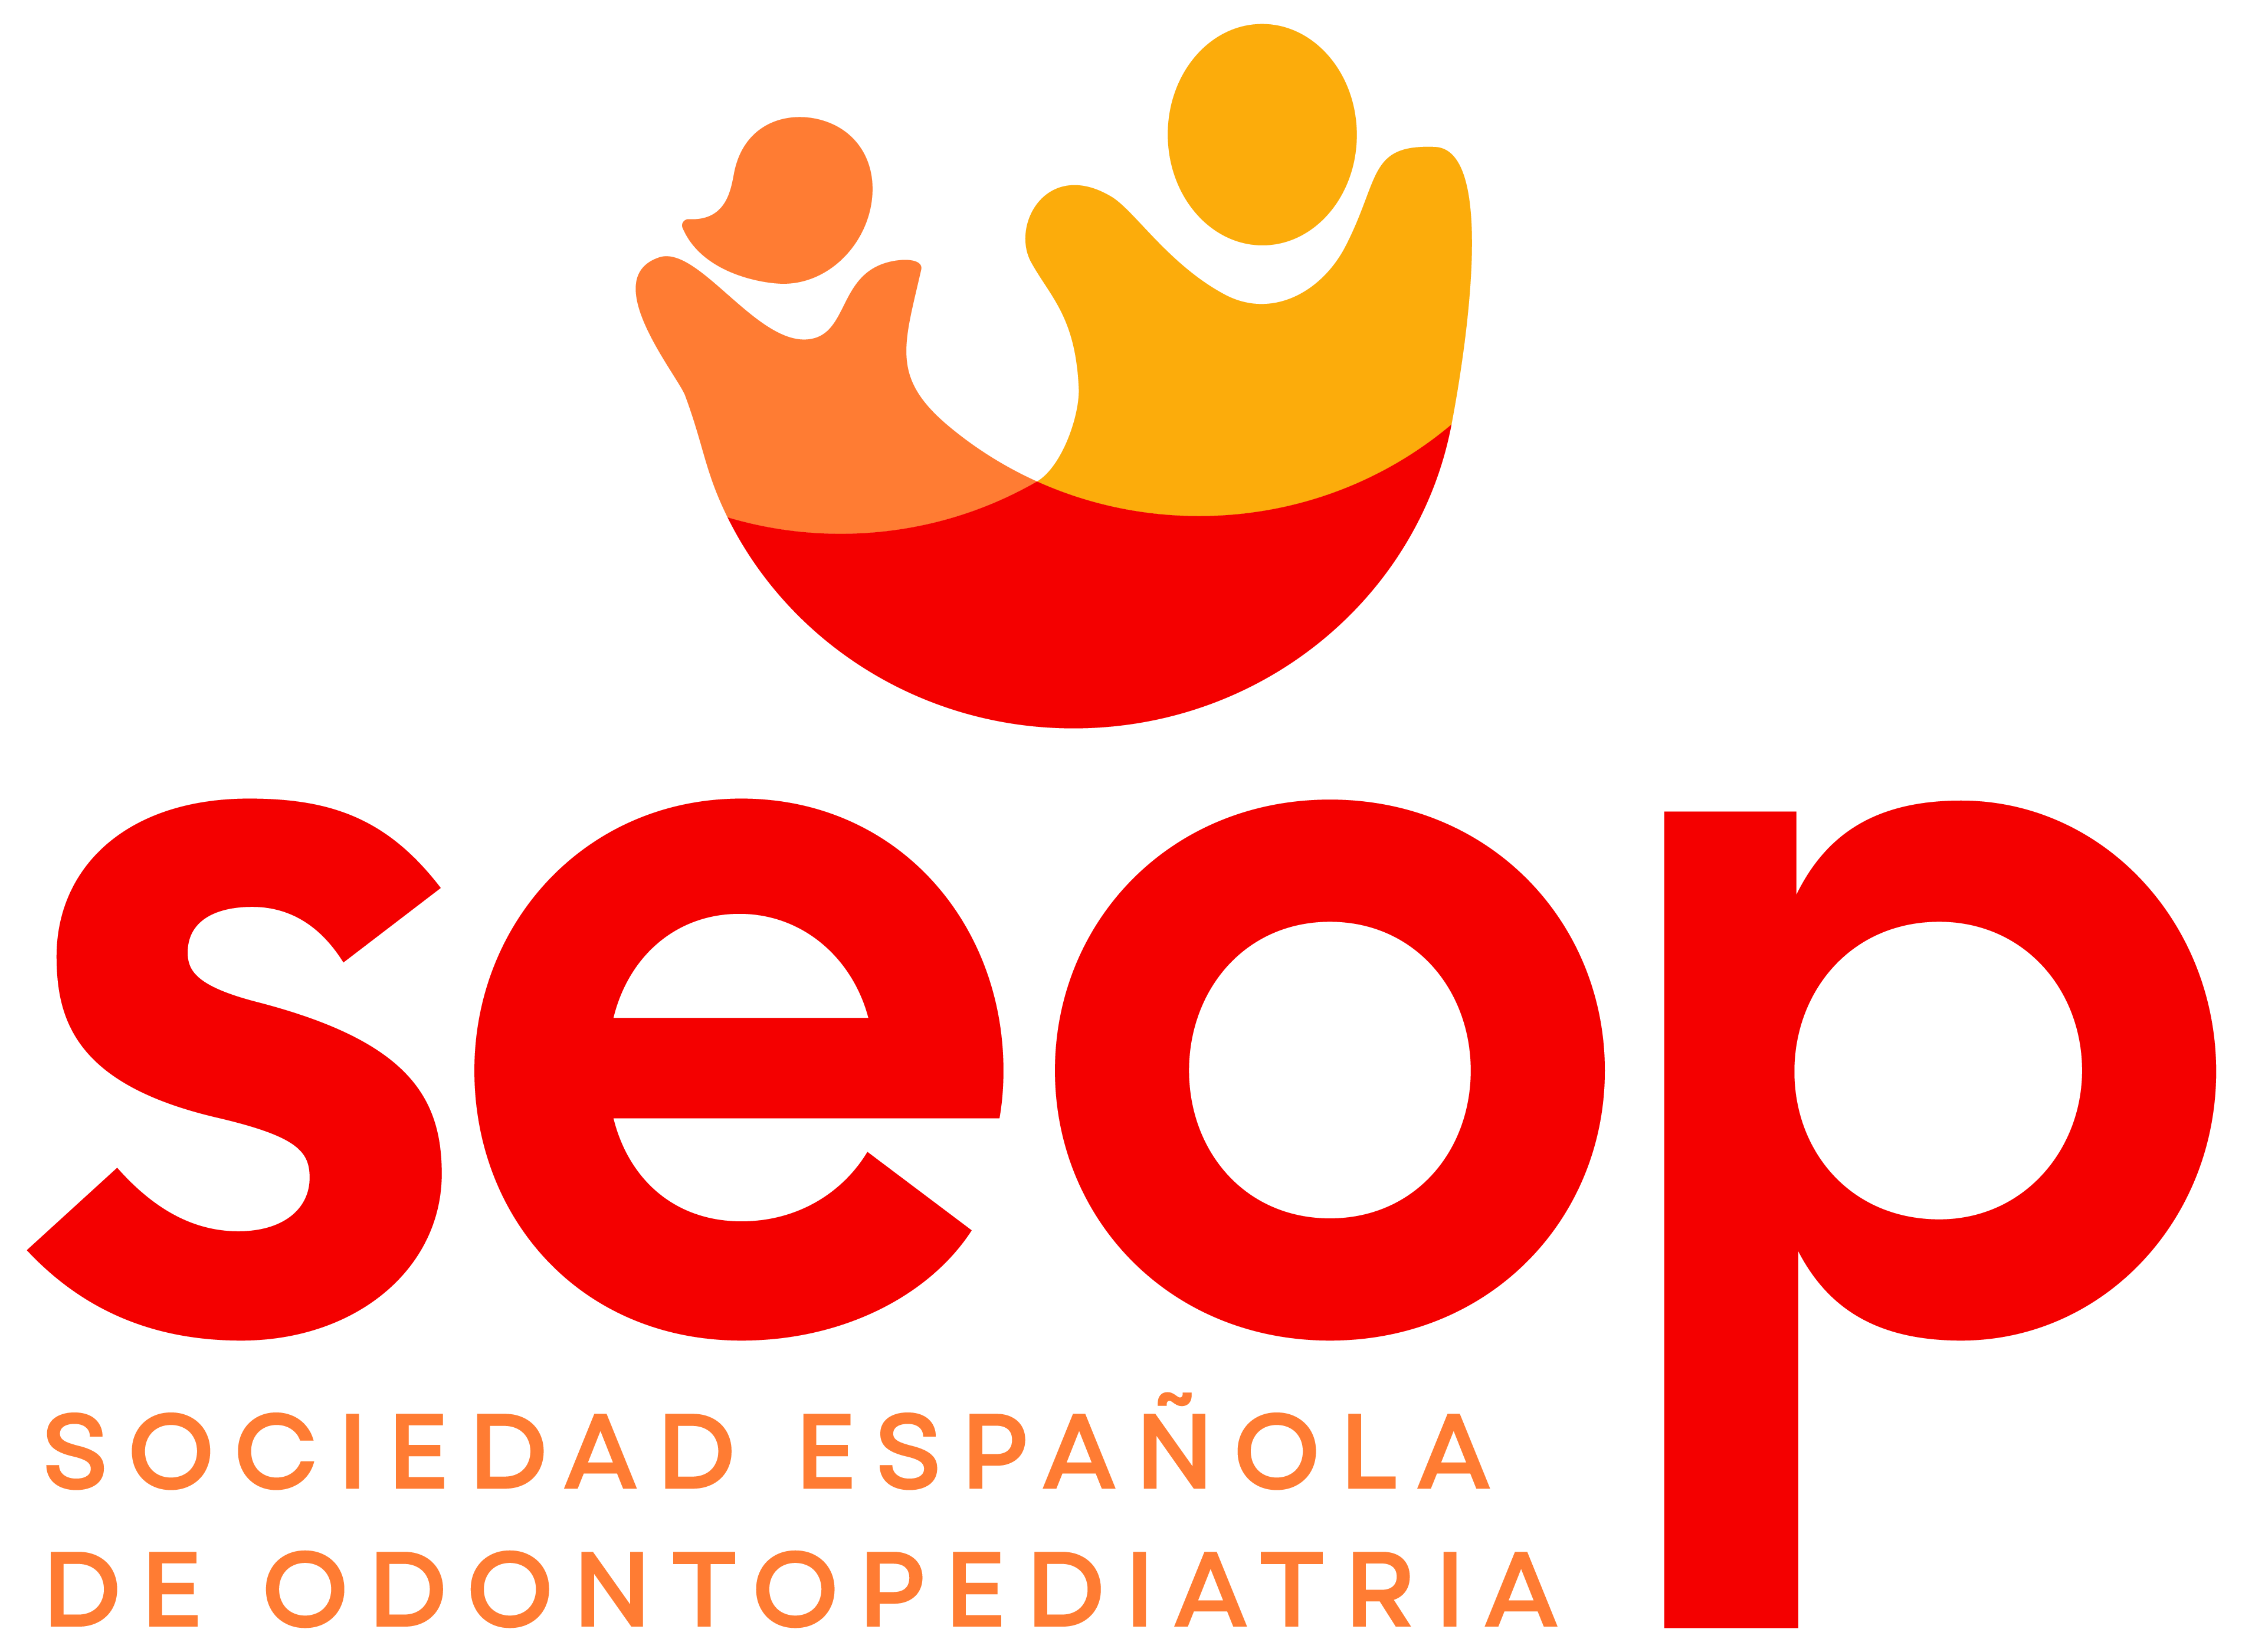 Sociedad Española de Odontopediatría